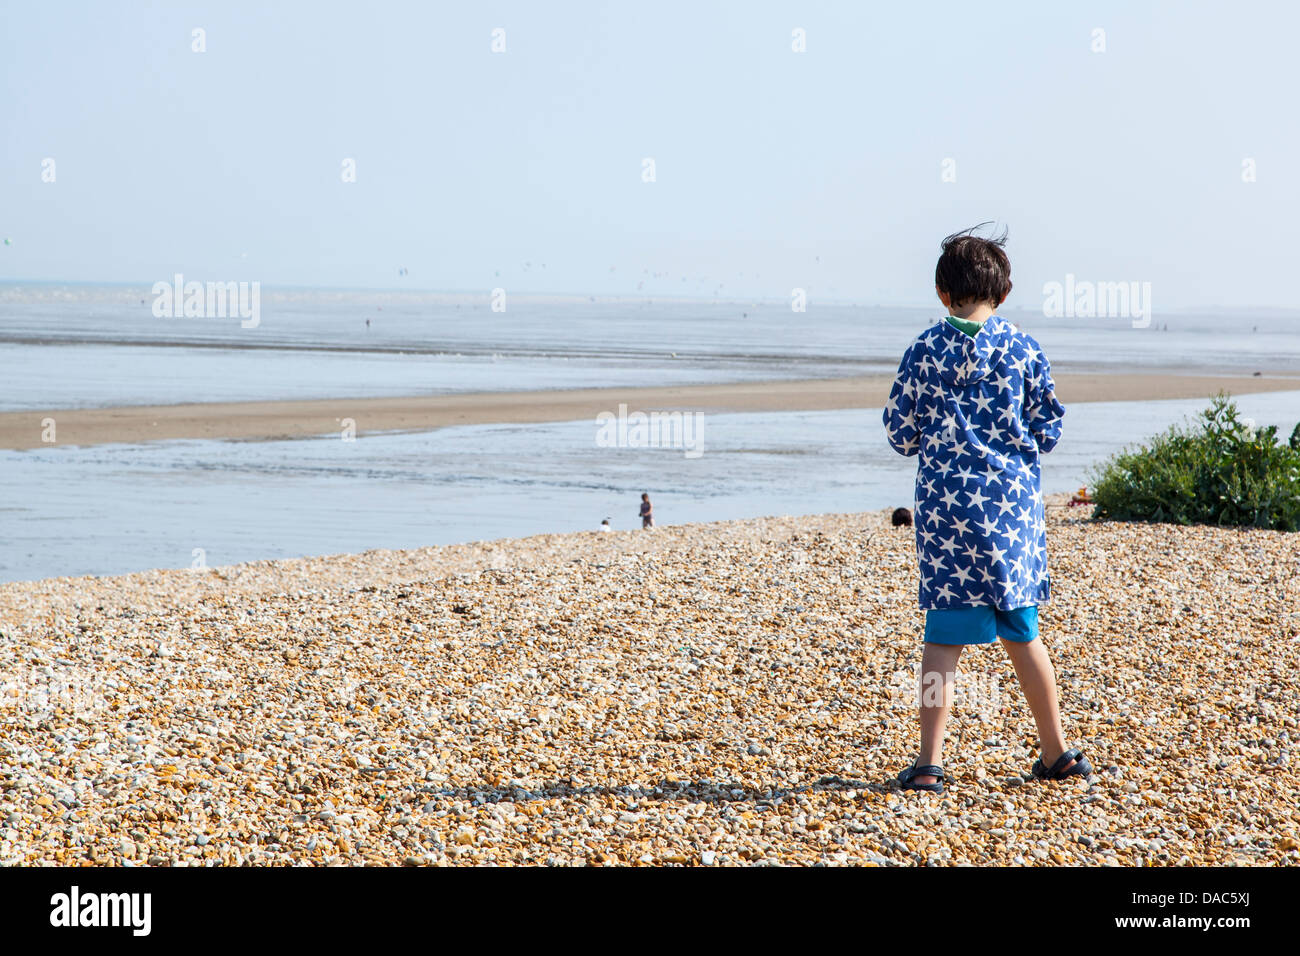 Junge stand am Strand, blaue Jacke mit weißem Muster, Meer Strand mit jungen stehen, mit Blick auf den Strand Stockfoto